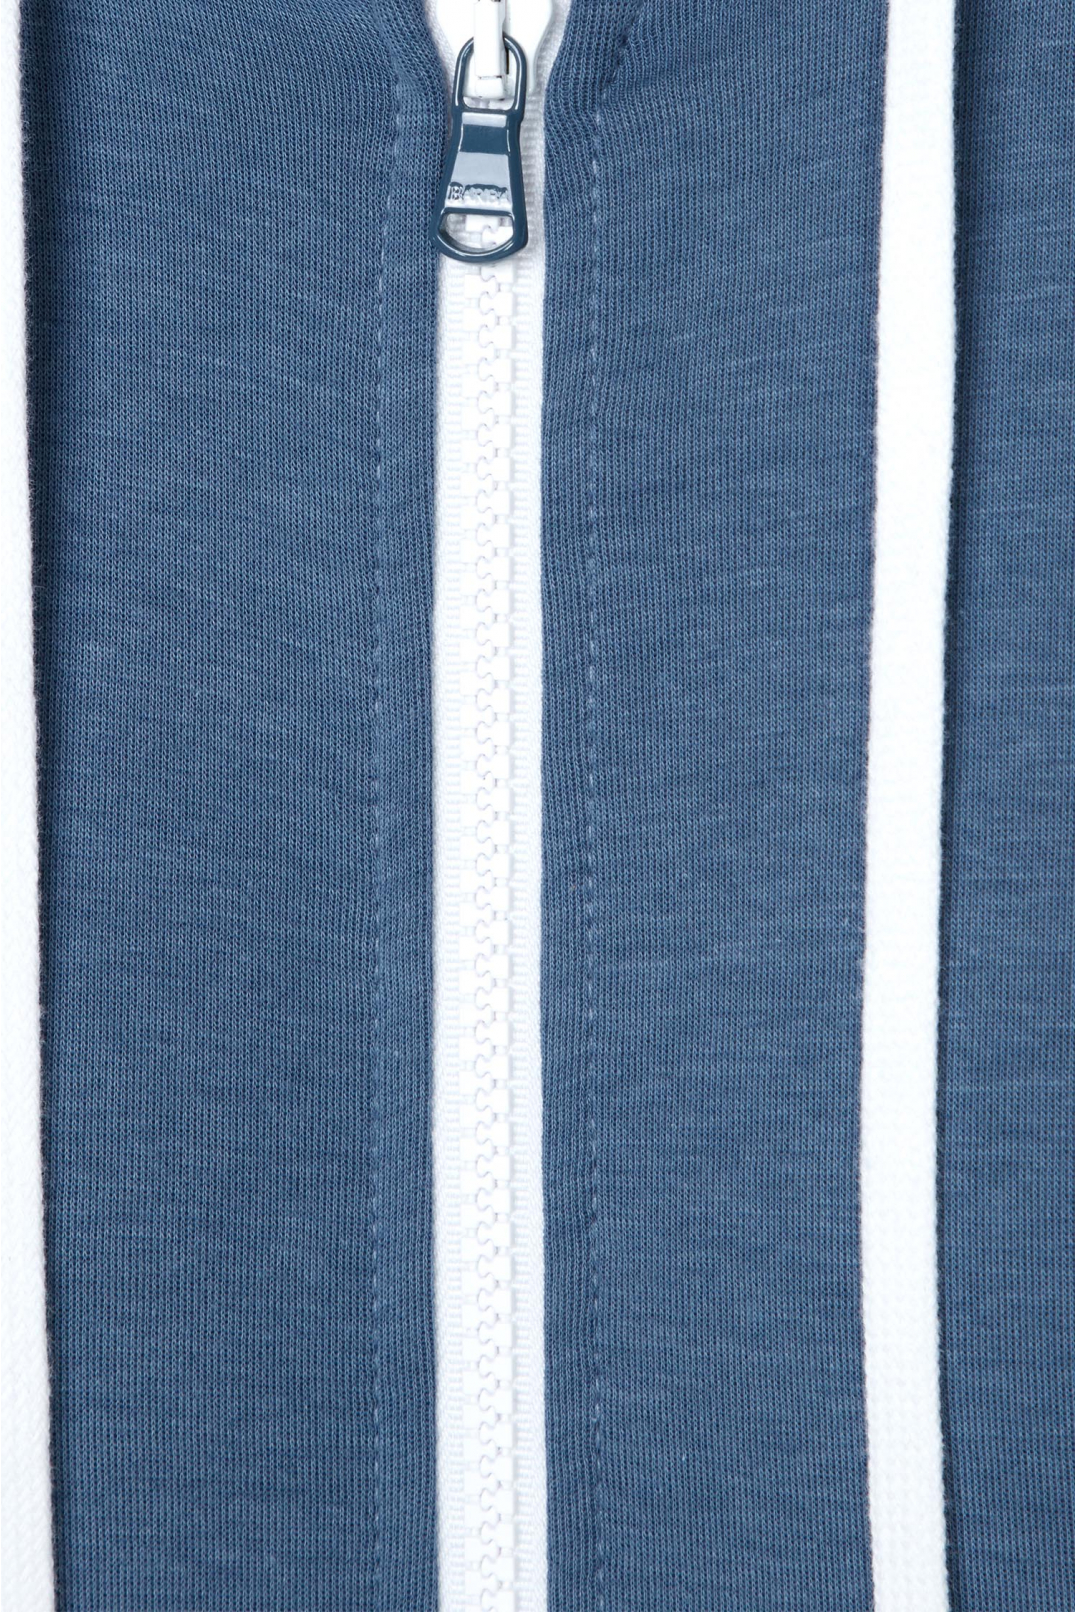 Чоловічий синій спортивний костюм (худі, штани) - 4